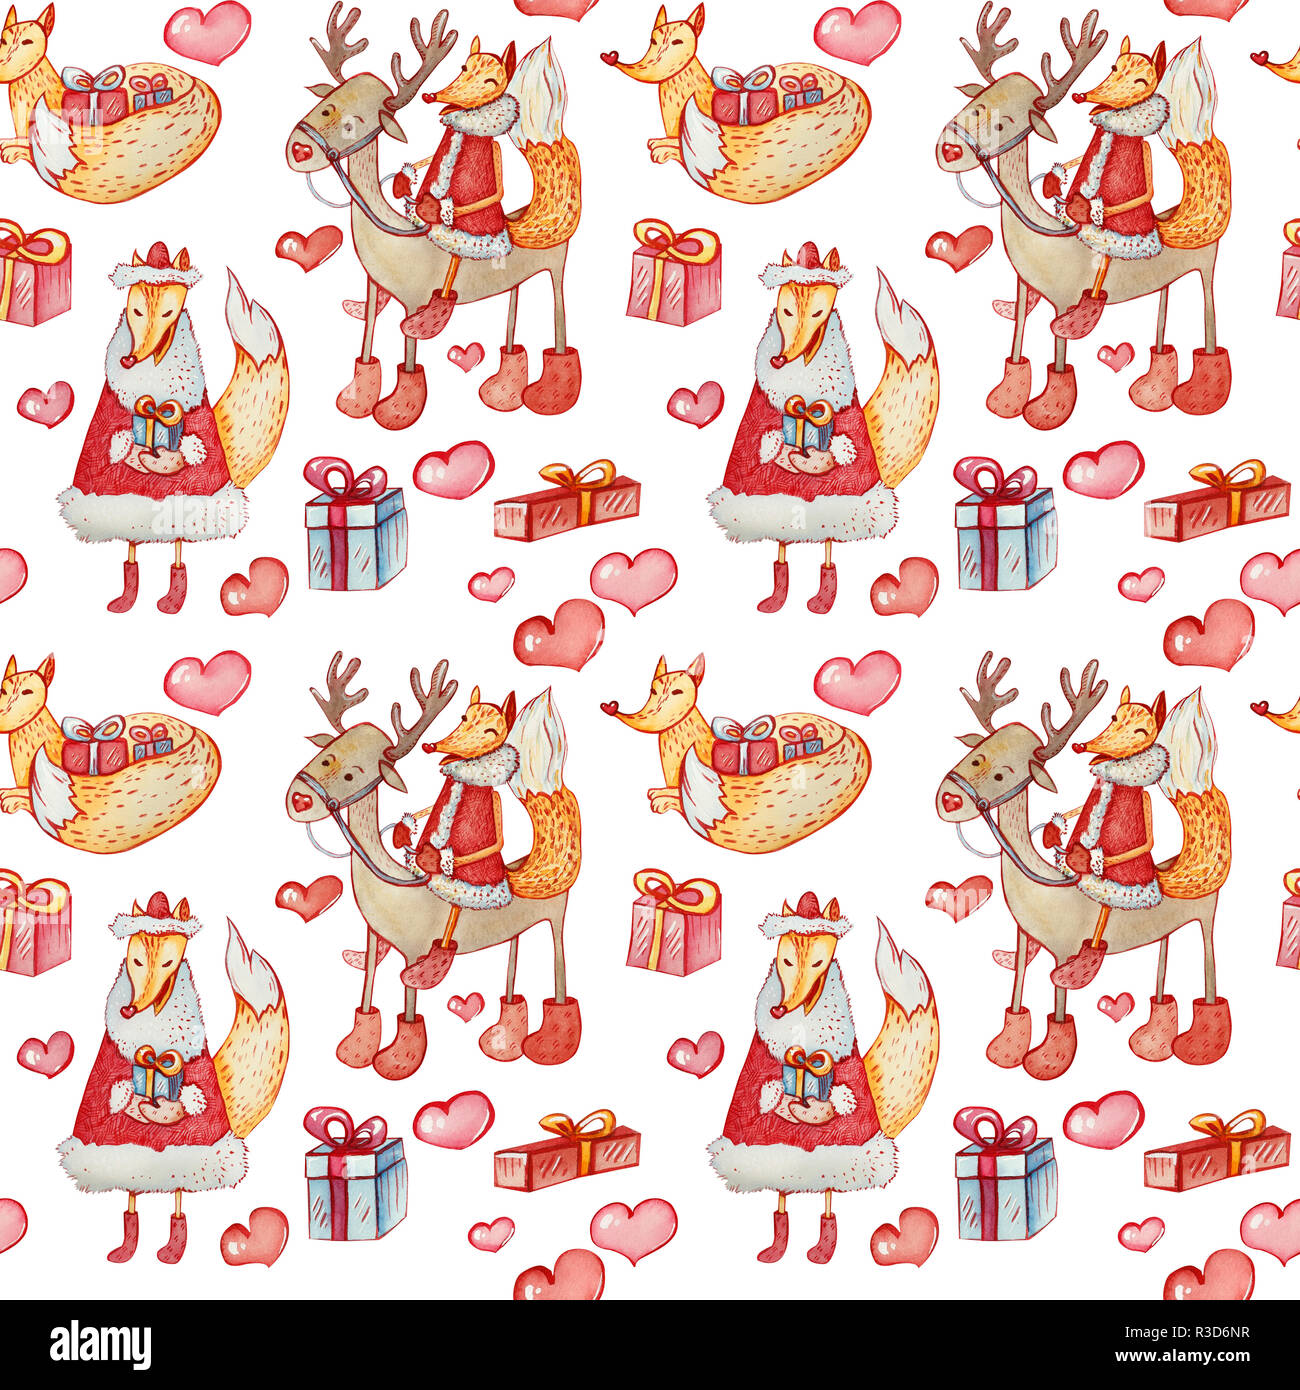 Aquarell nahtlose Muster mit Weihnachten Zeichen auf weißem Hintergrund. Sly Fox auf ein Reh, Wandern und Lügen Fuchs mit Geschenkboxen und Herzen. Stockfoto